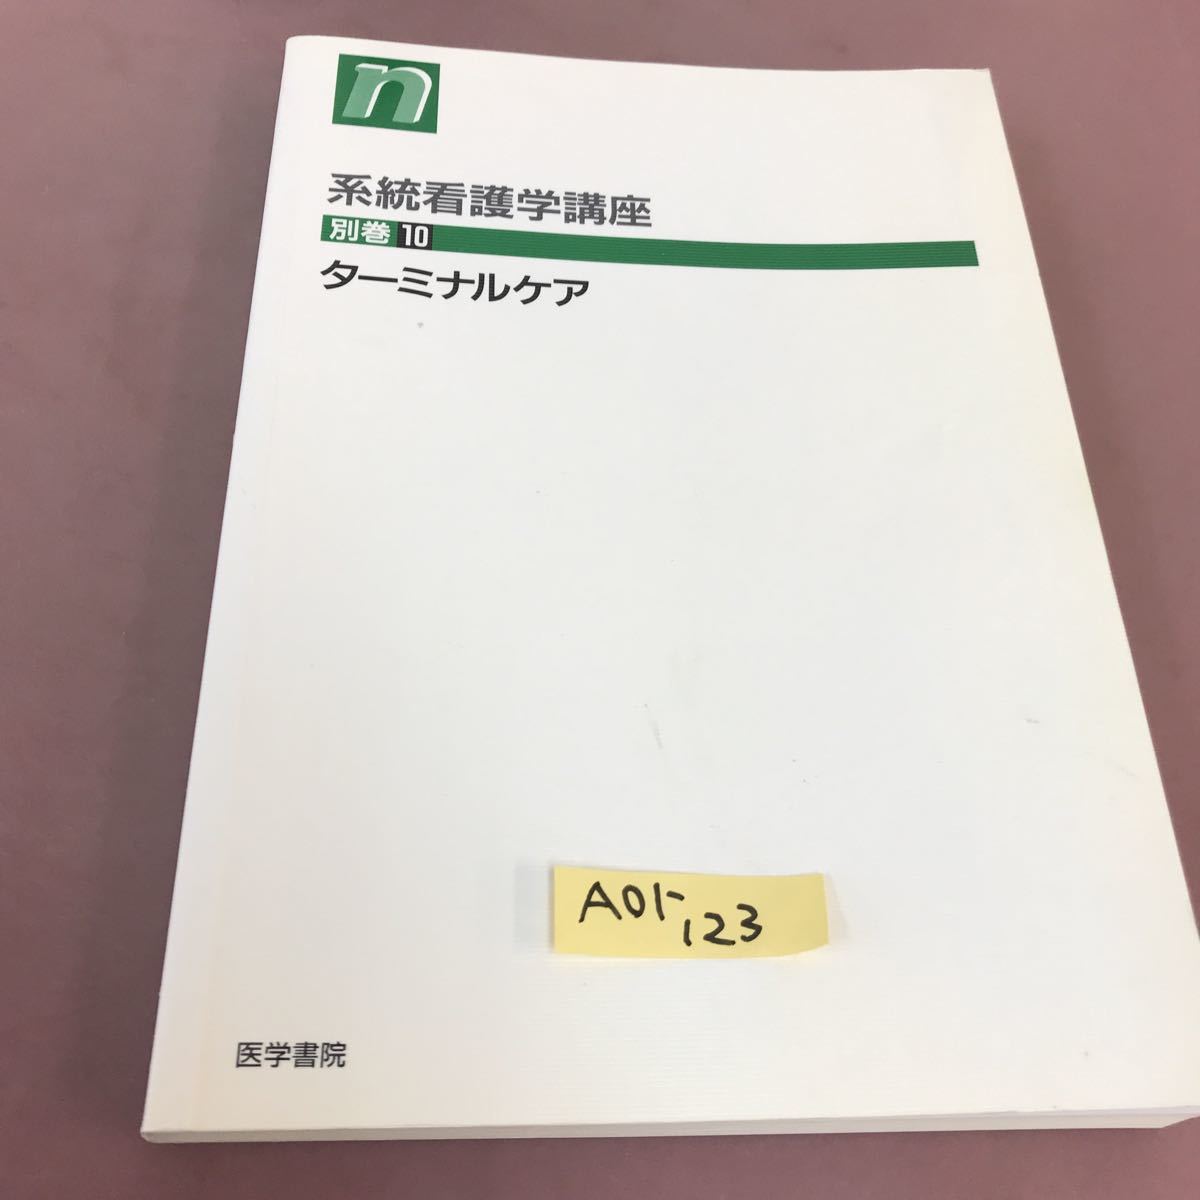 独特の上品 A01-123 系看 別巻10 ターミナルケア 医学書院 系統看護学